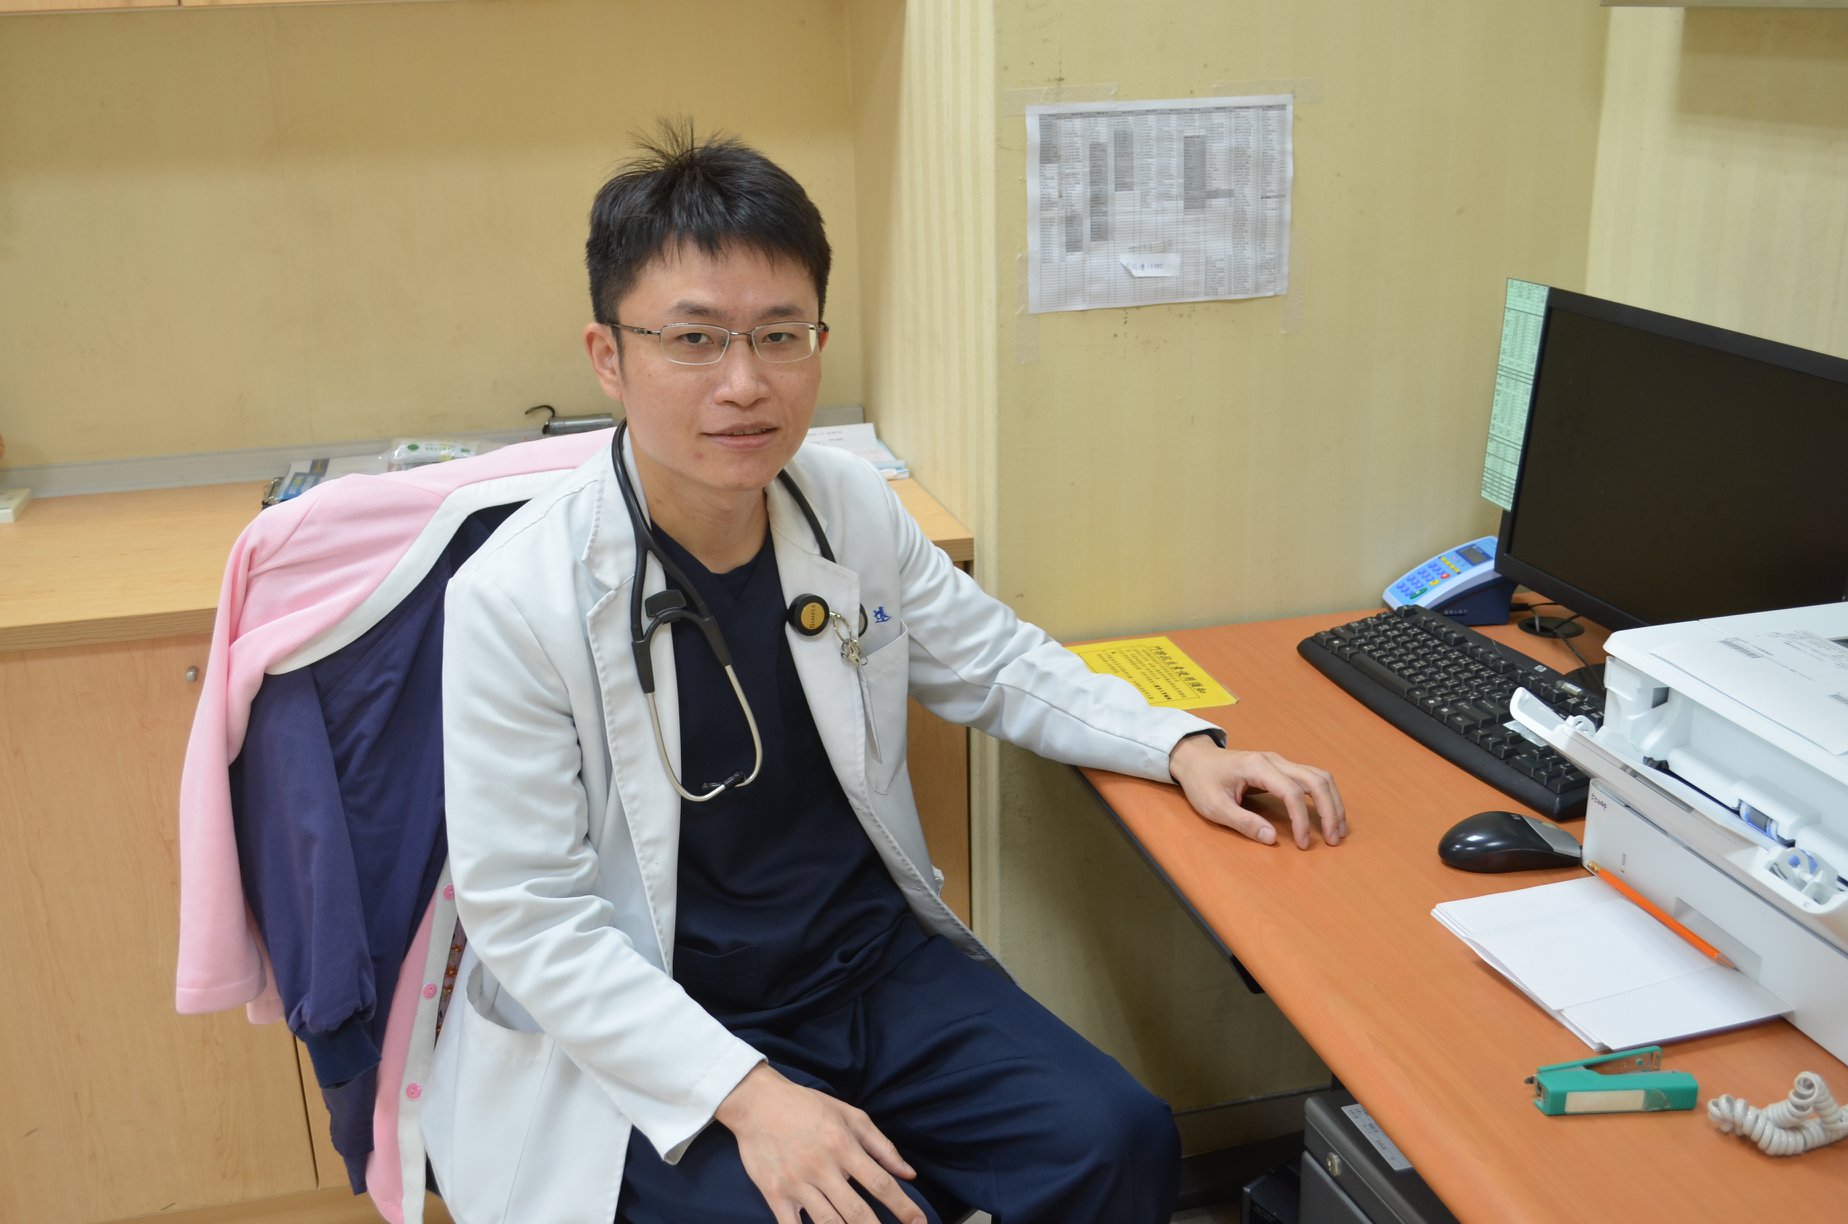 Sheng-yuan Ho MD Division of Neonatology